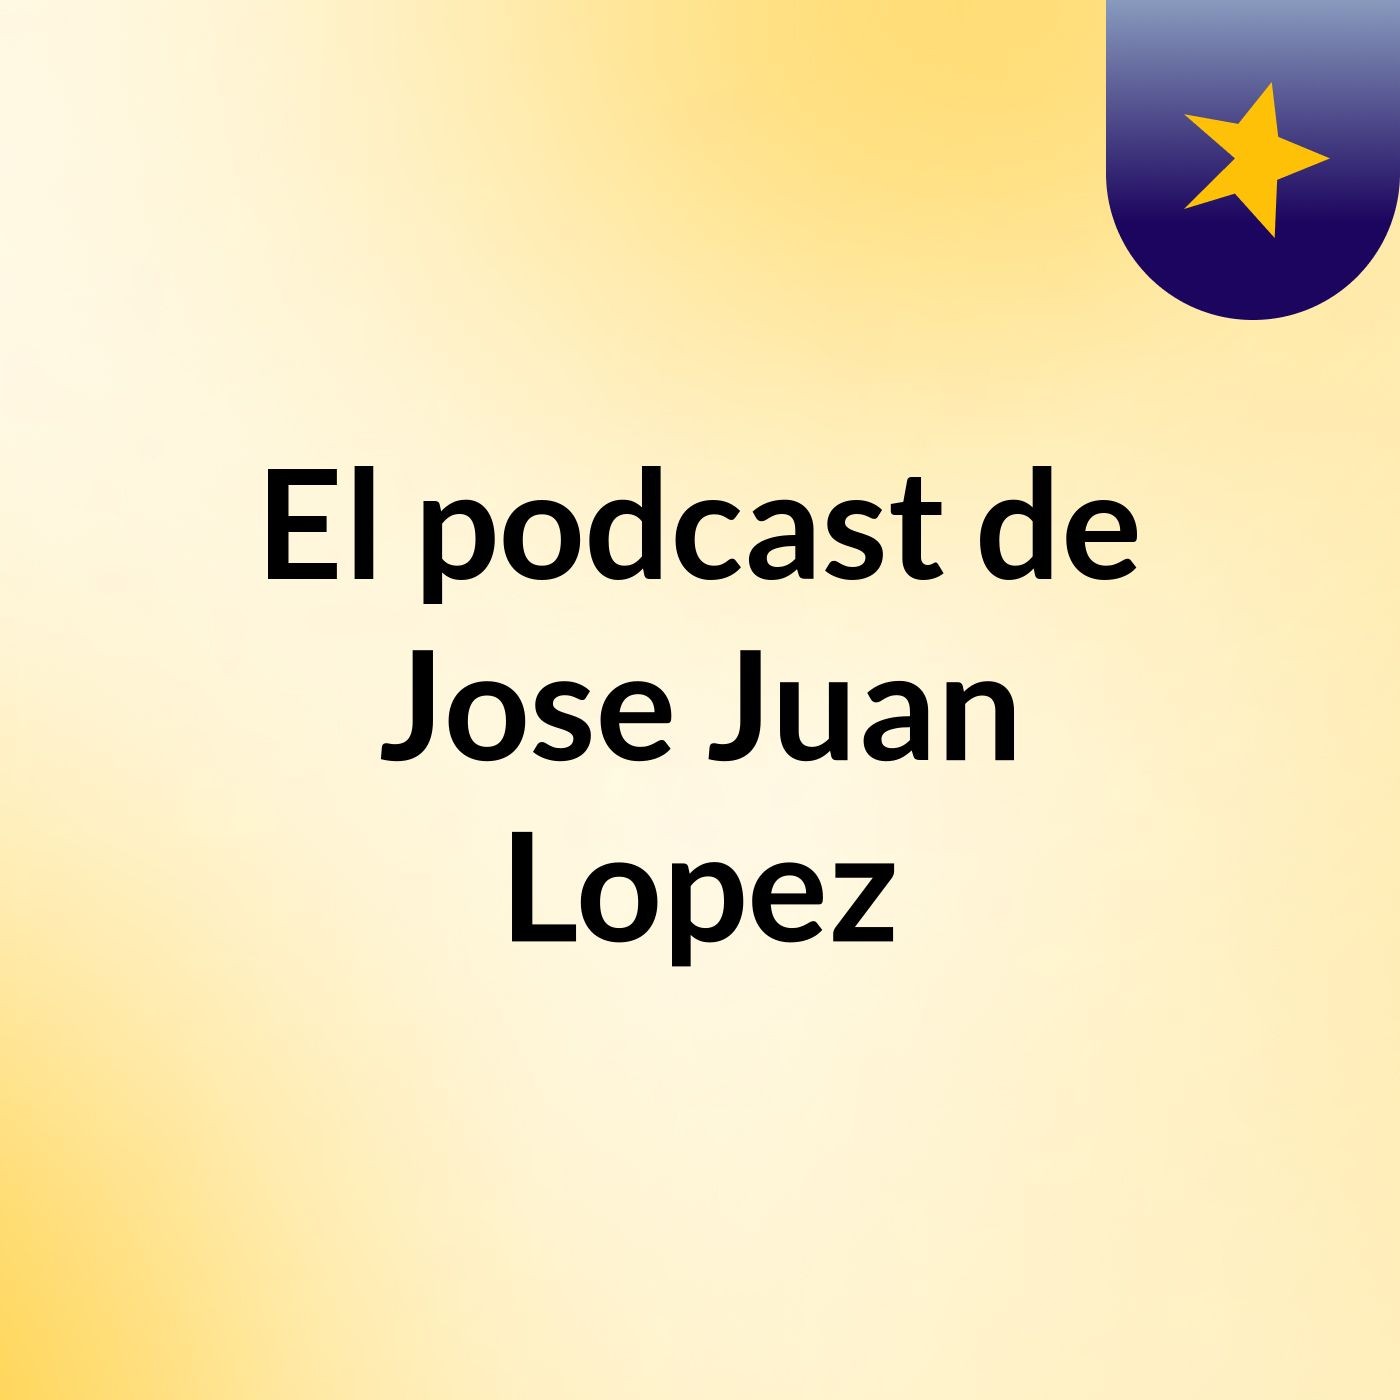 El podcast de Jose Juan Lopez